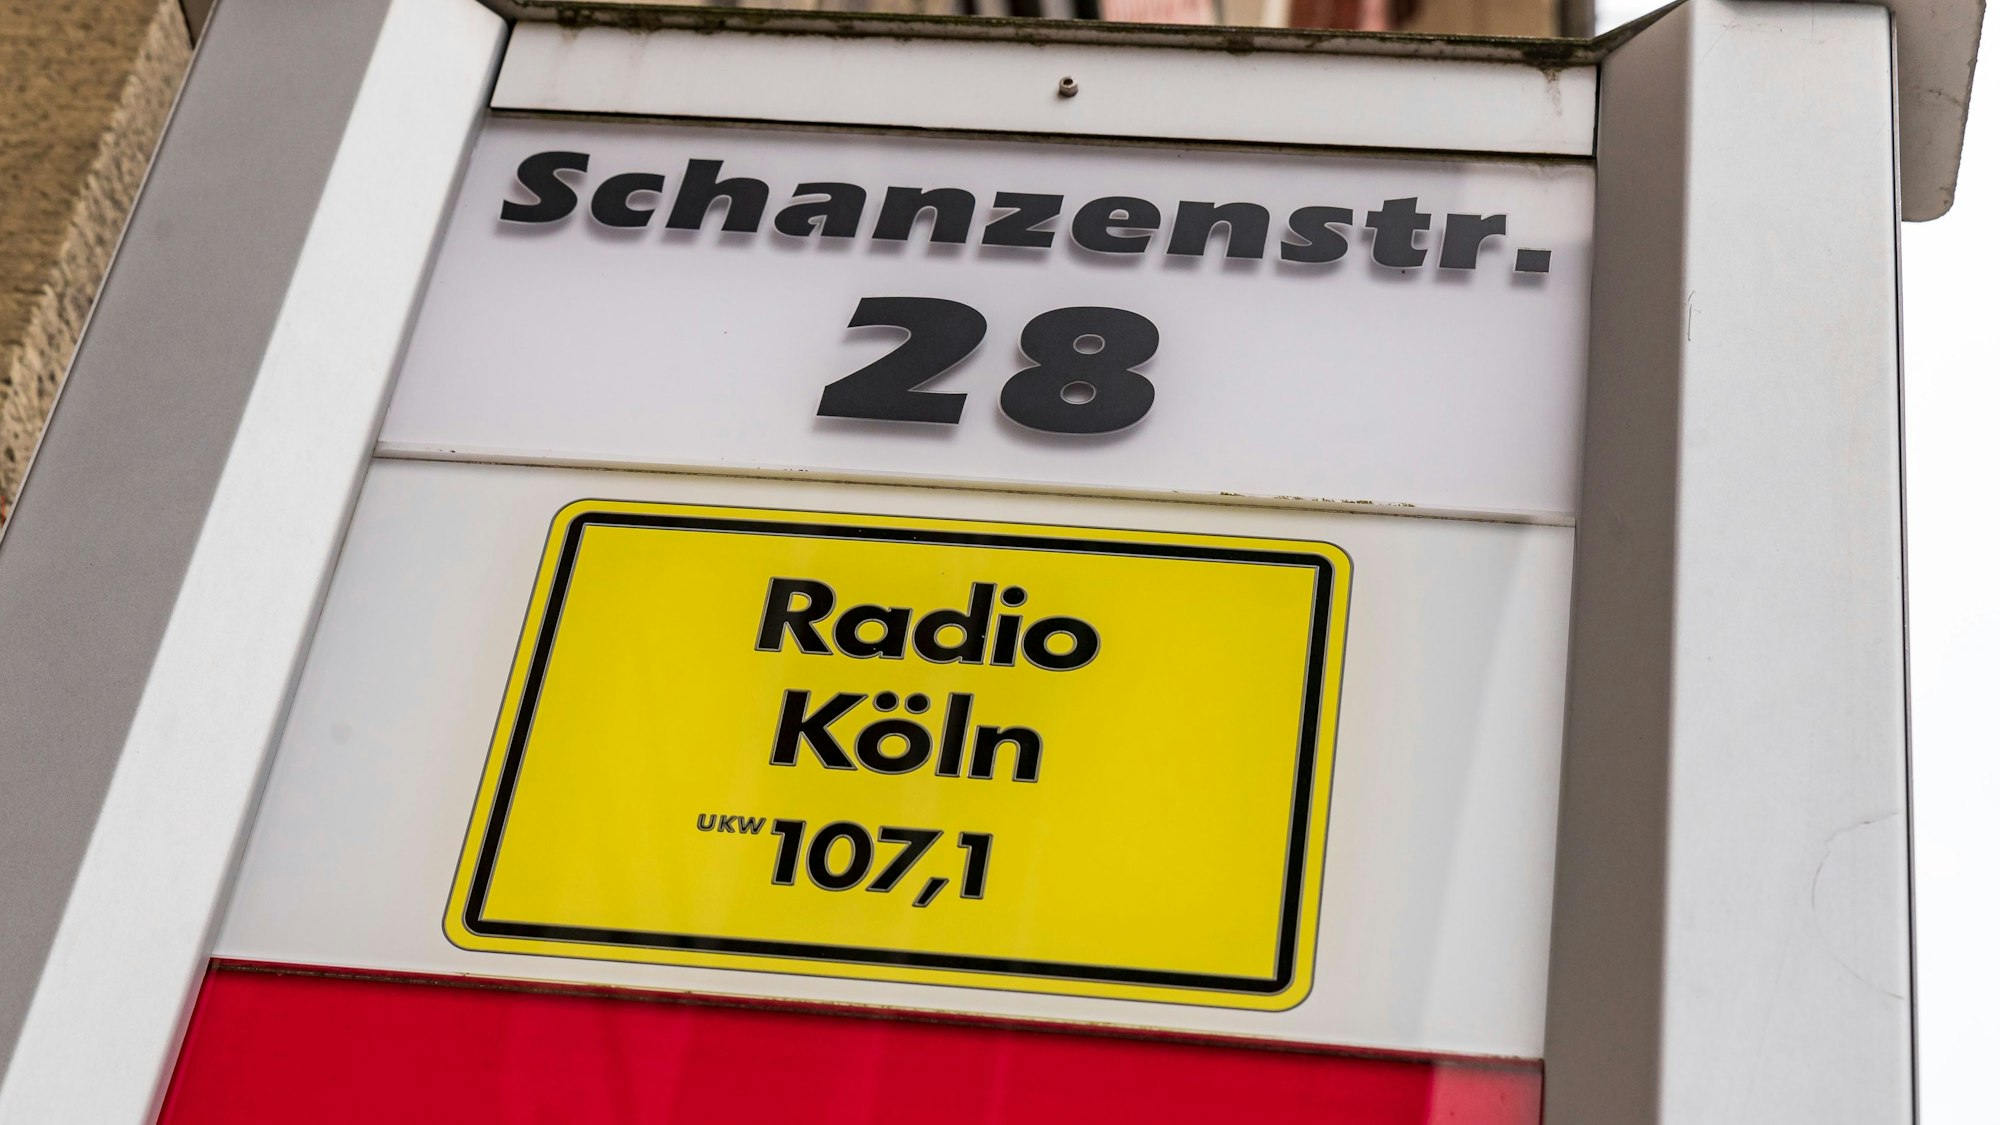 Radio Köln ist ein zum Privatrundfunk gehörender Kölner Lokalradiosender mit Vollprogramm. Seit Anfang 2014 hat der Sender seinen Sitz in der Schanzenstraße 28 in Köln-Mülheim.